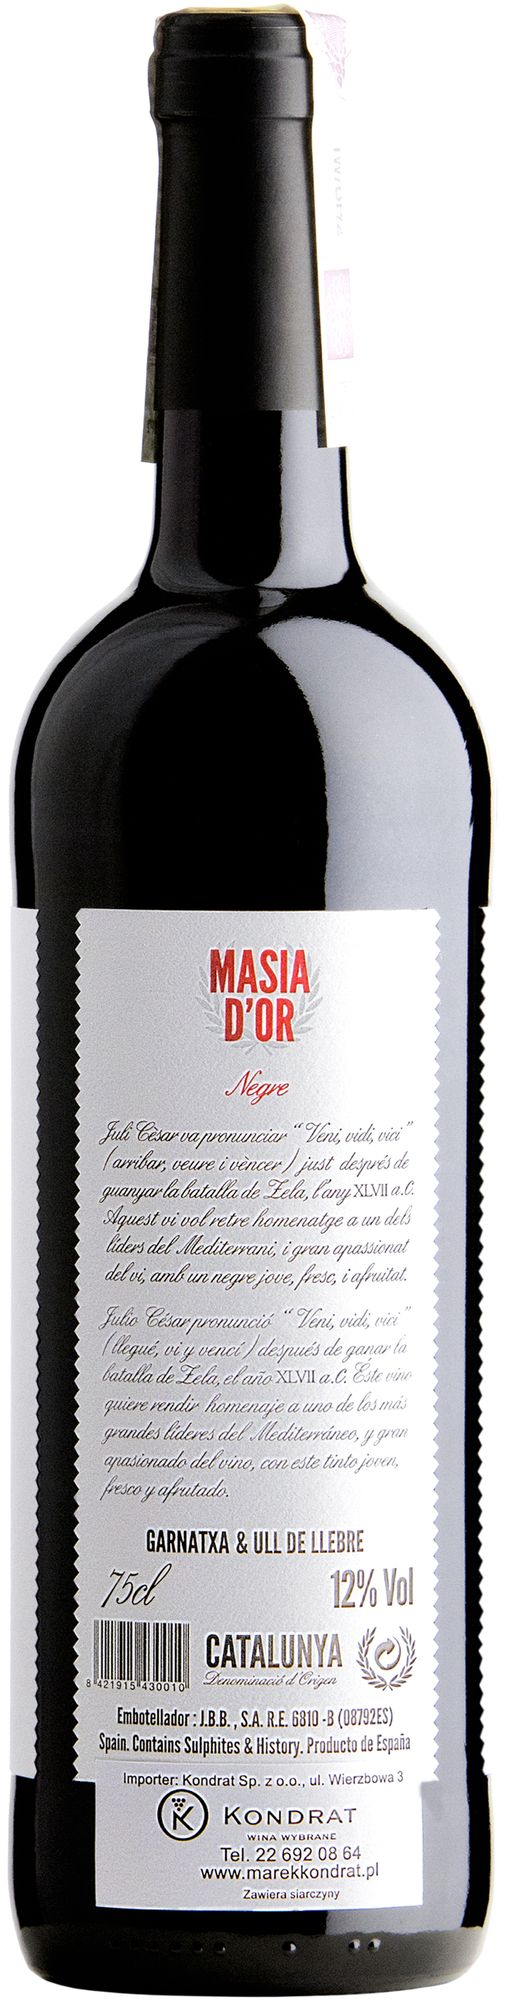 Wino Martí Serdà Veni Vidi Vinum Red Catalunya DO